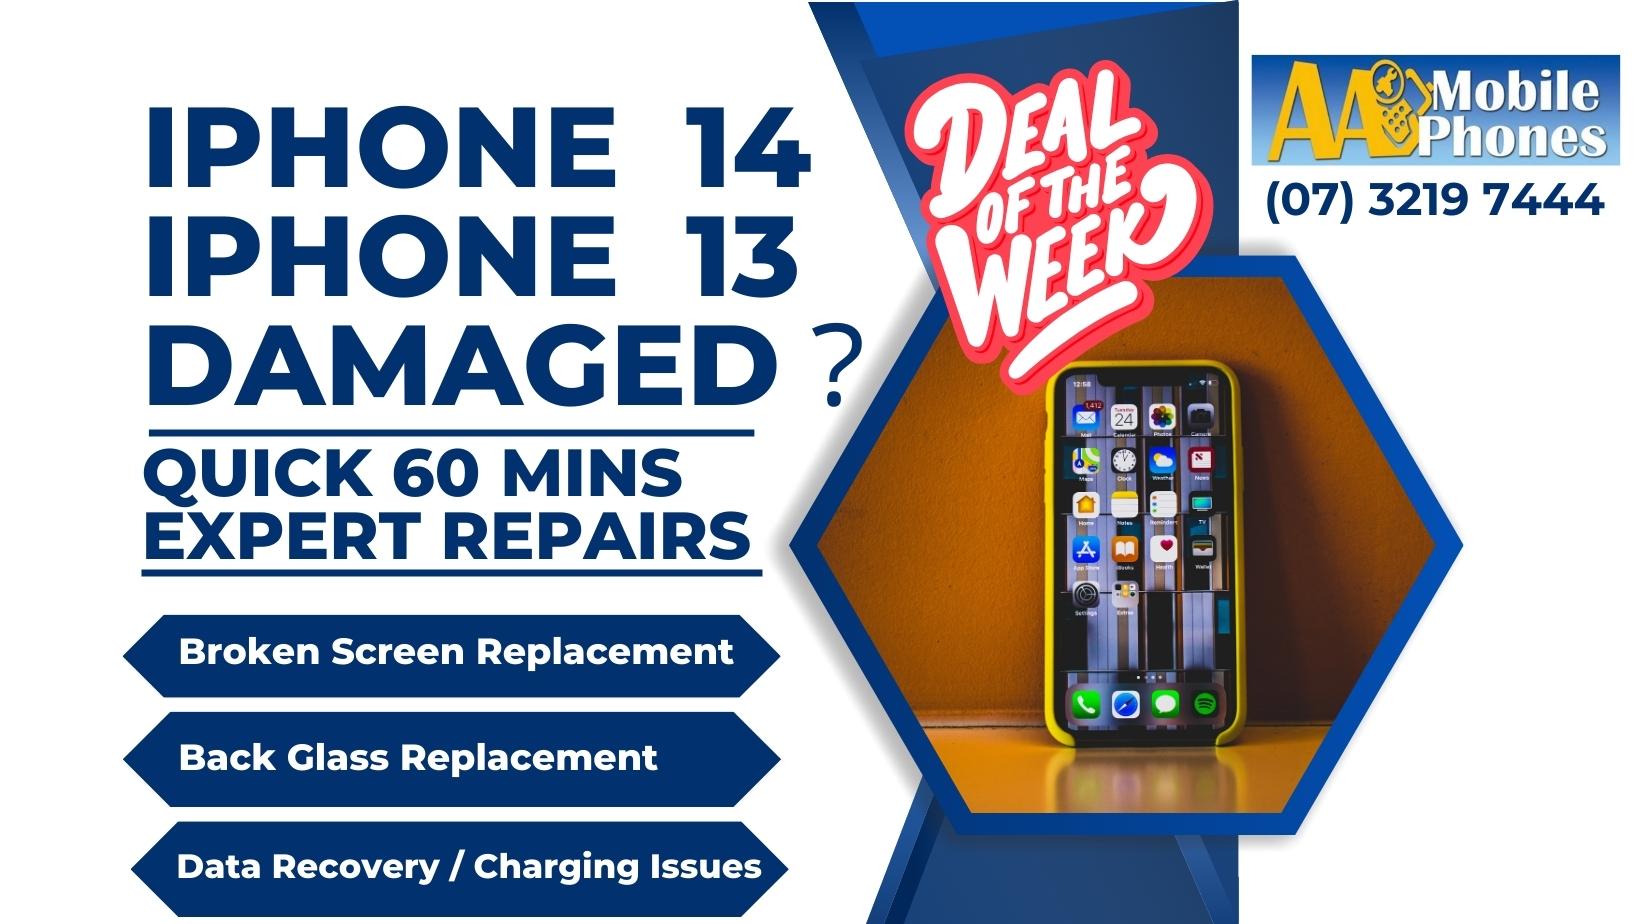 Deal of the week - Repair Broken iPhone 14 & iPhone 13